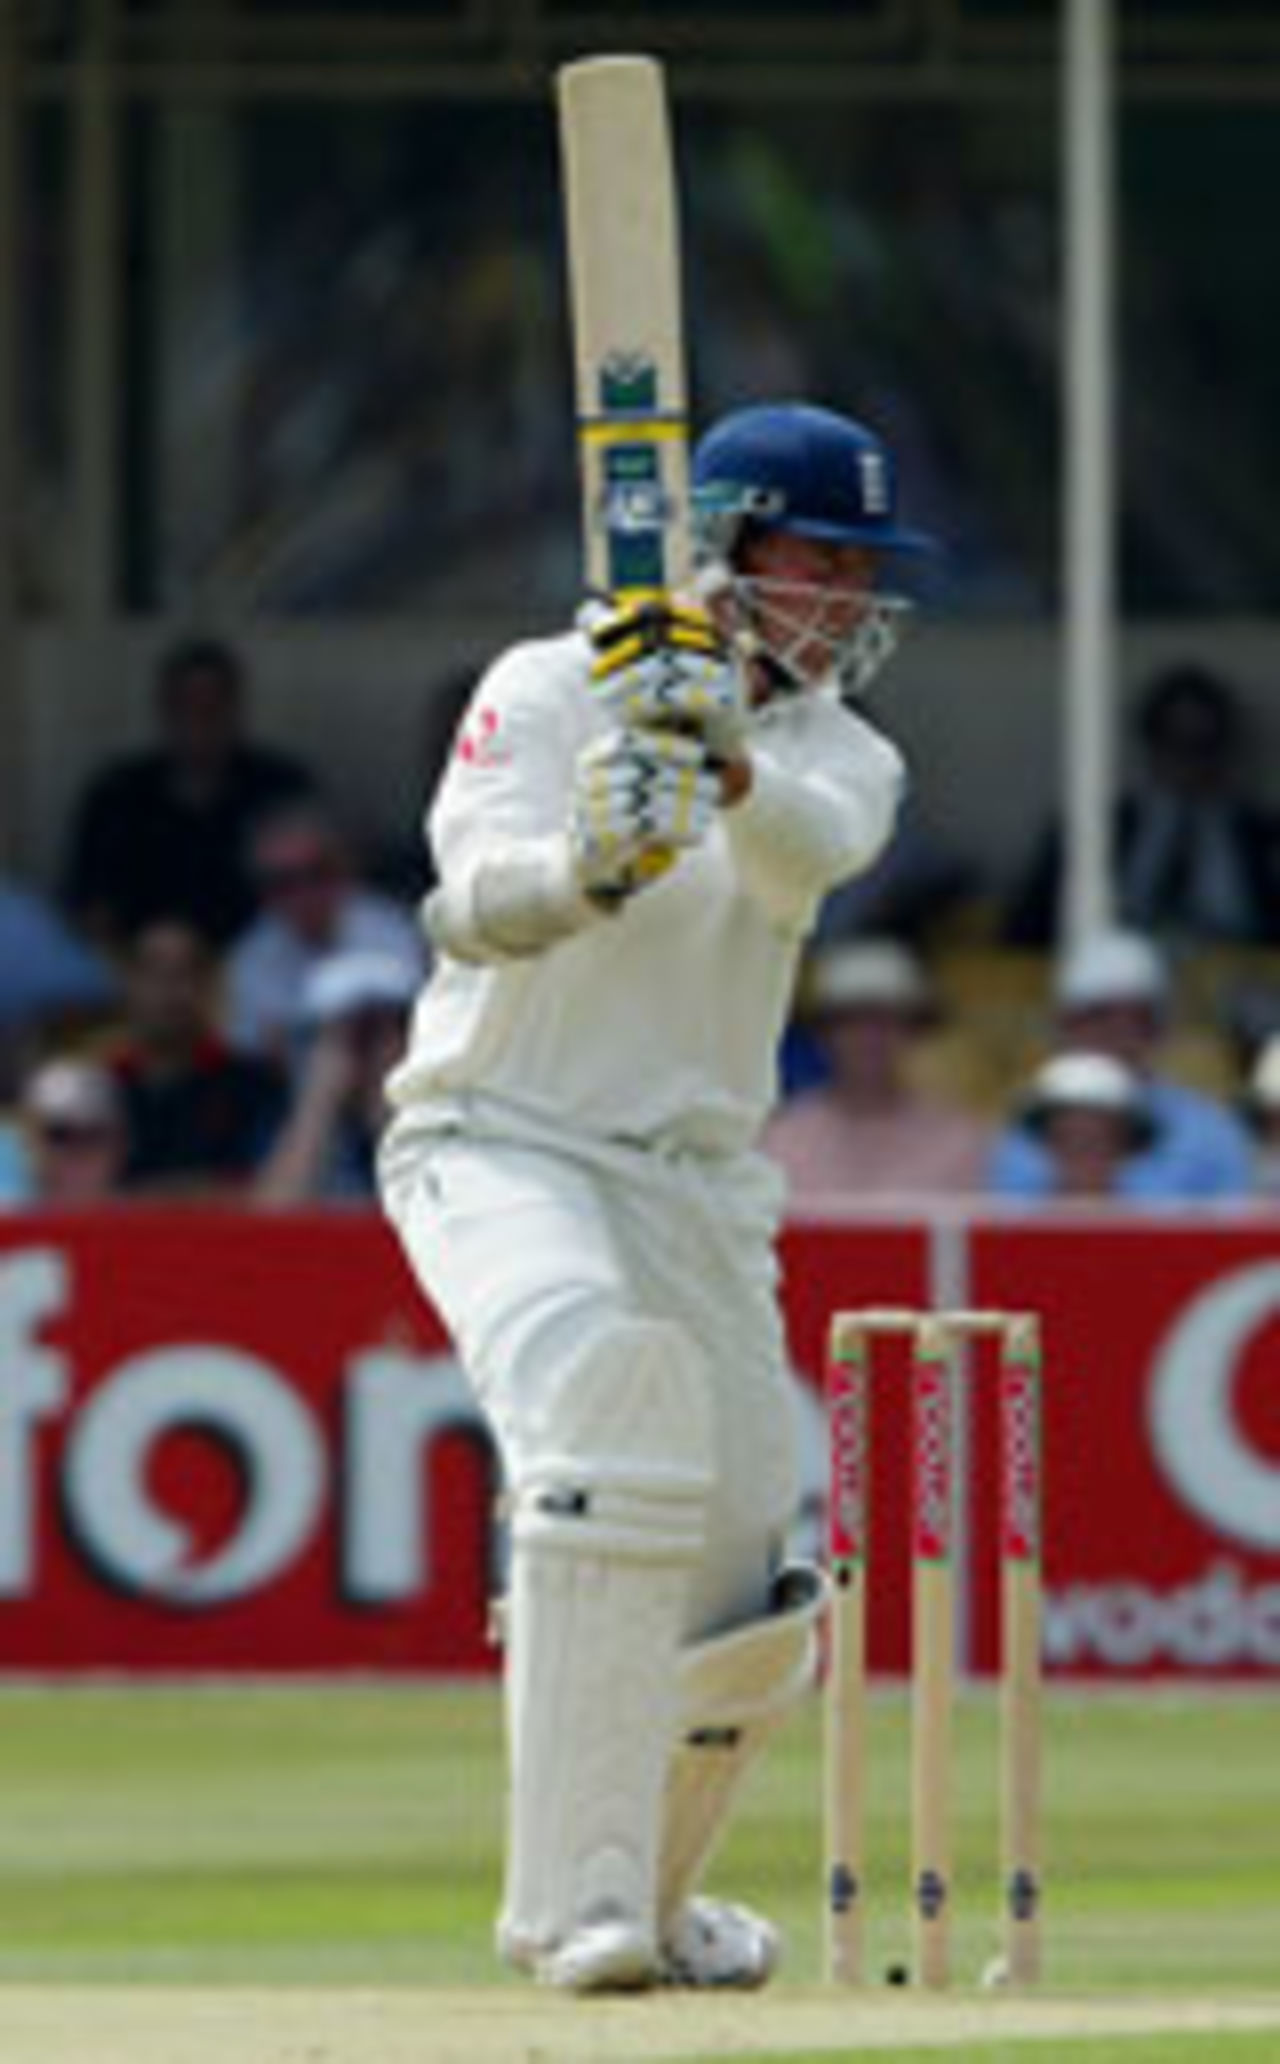 Marcus Trescothick batting, England v West Indies, 2nd Test, Edgbaston, July 29, 2004